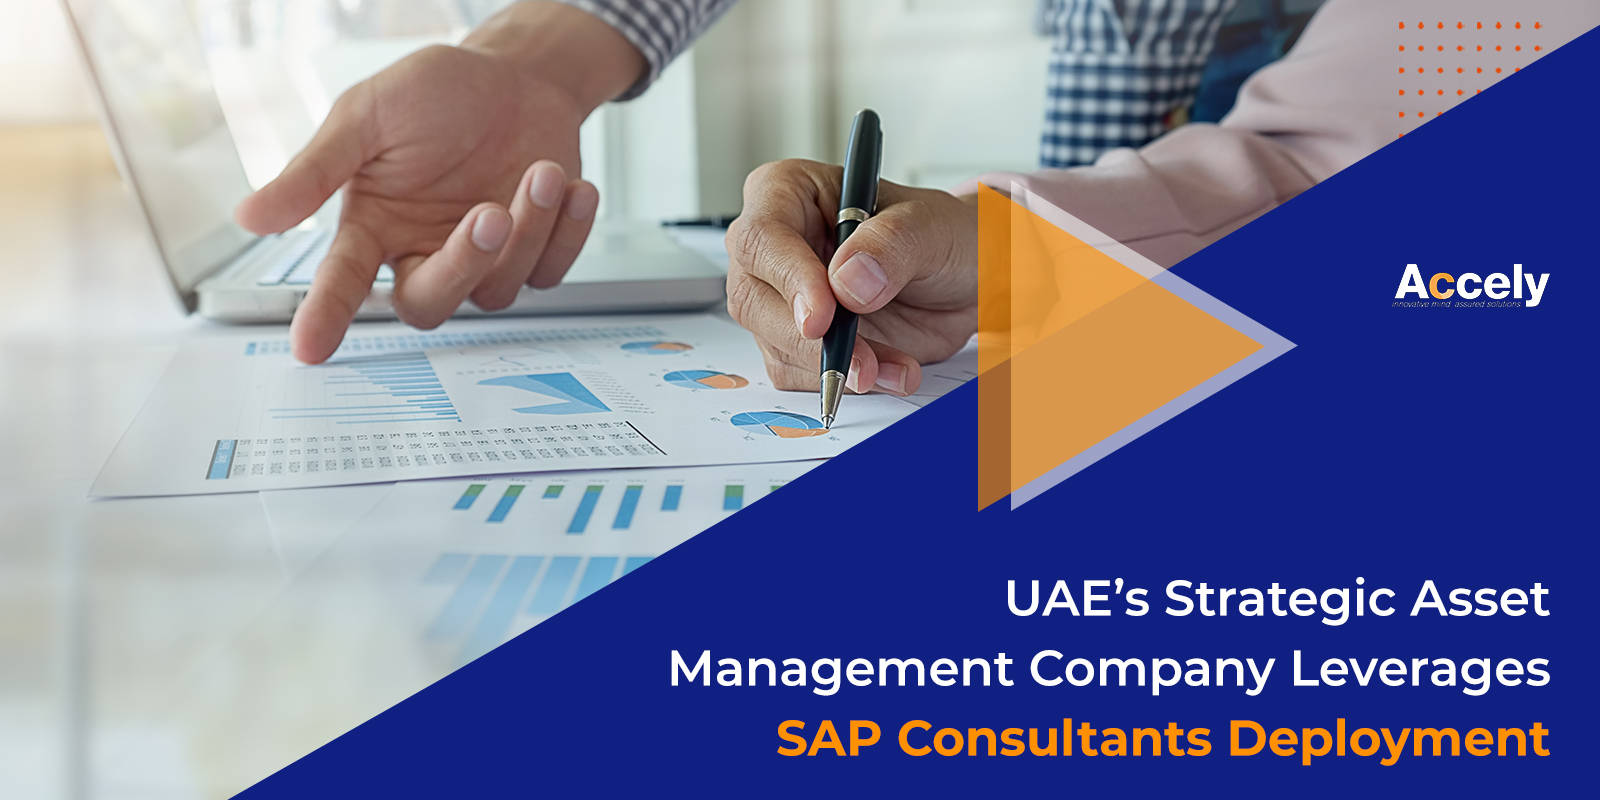 UAE’s Strategic Asset Management Company Leverages SAP Consultants Deployment